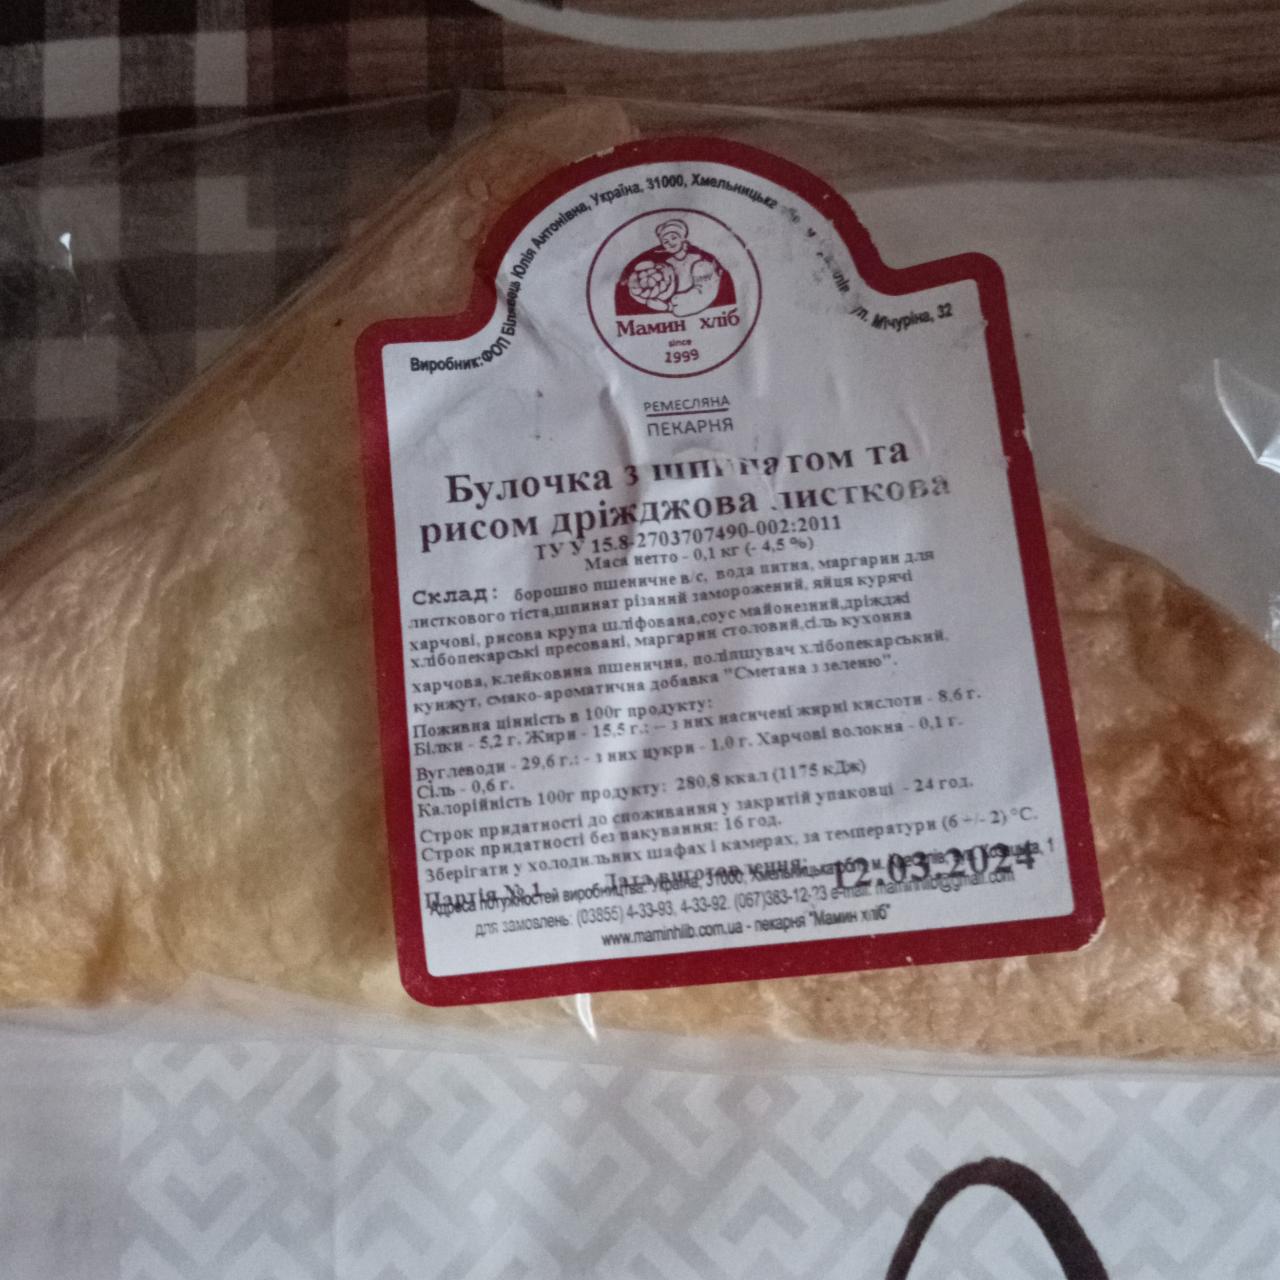 Фото - Булочка зі шпинатом та рисом дріжджова листкова Мамин хліб